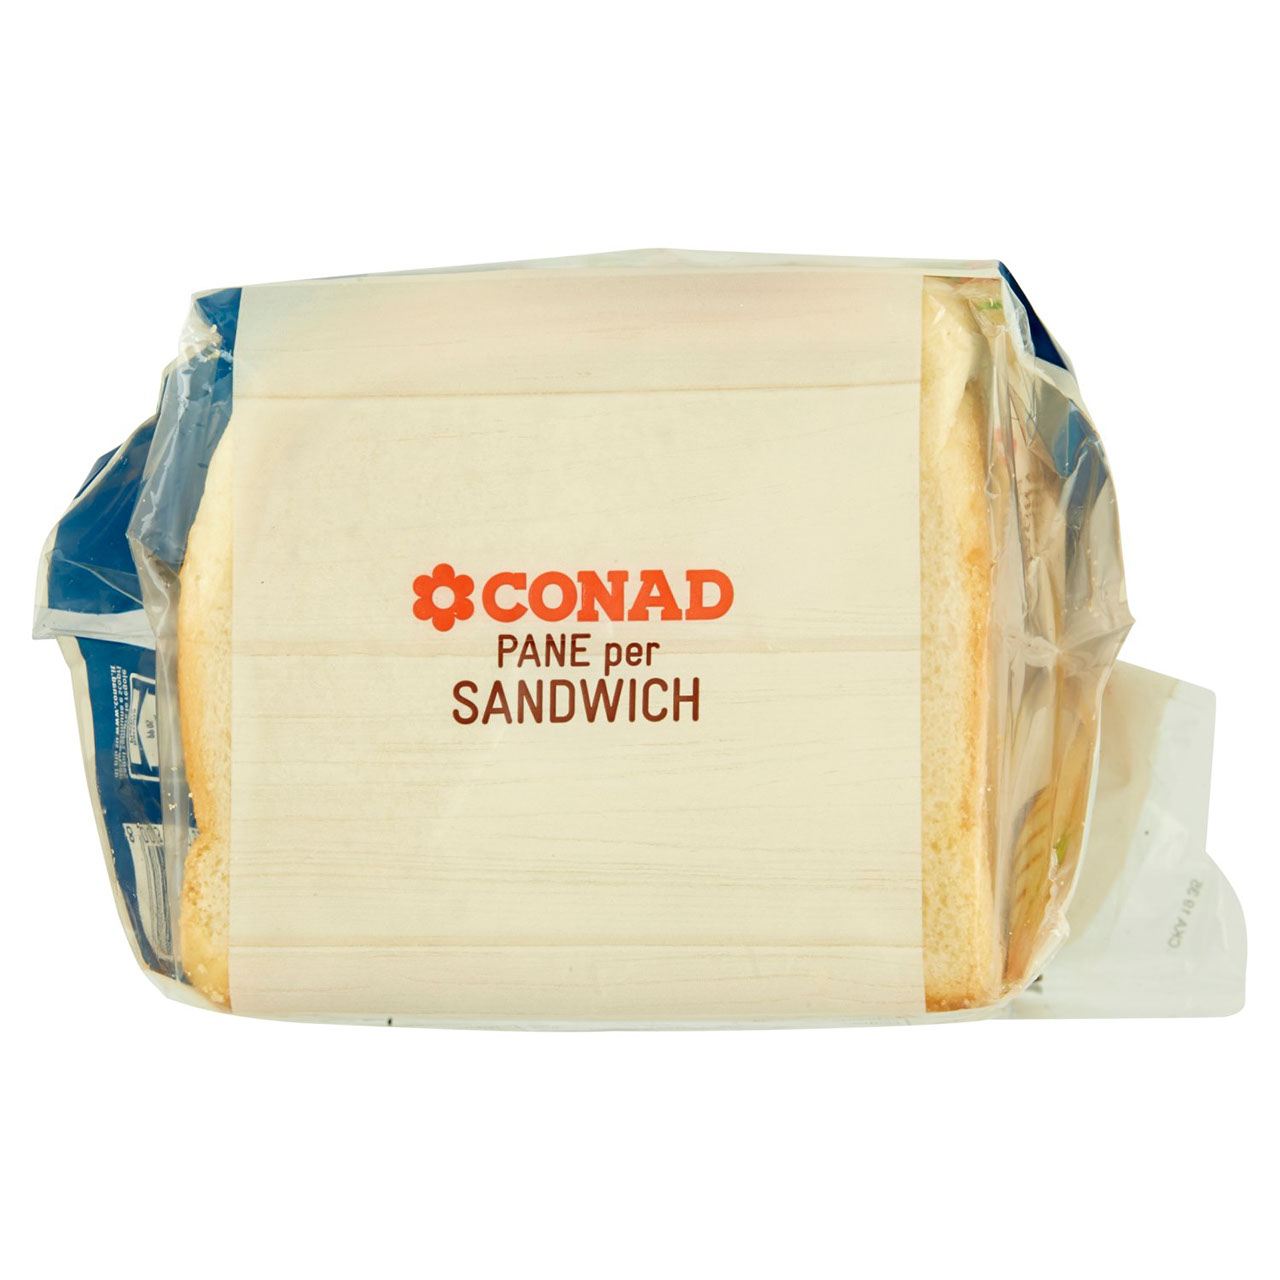 Pane per Sandwich 550 g Conad in vendita online